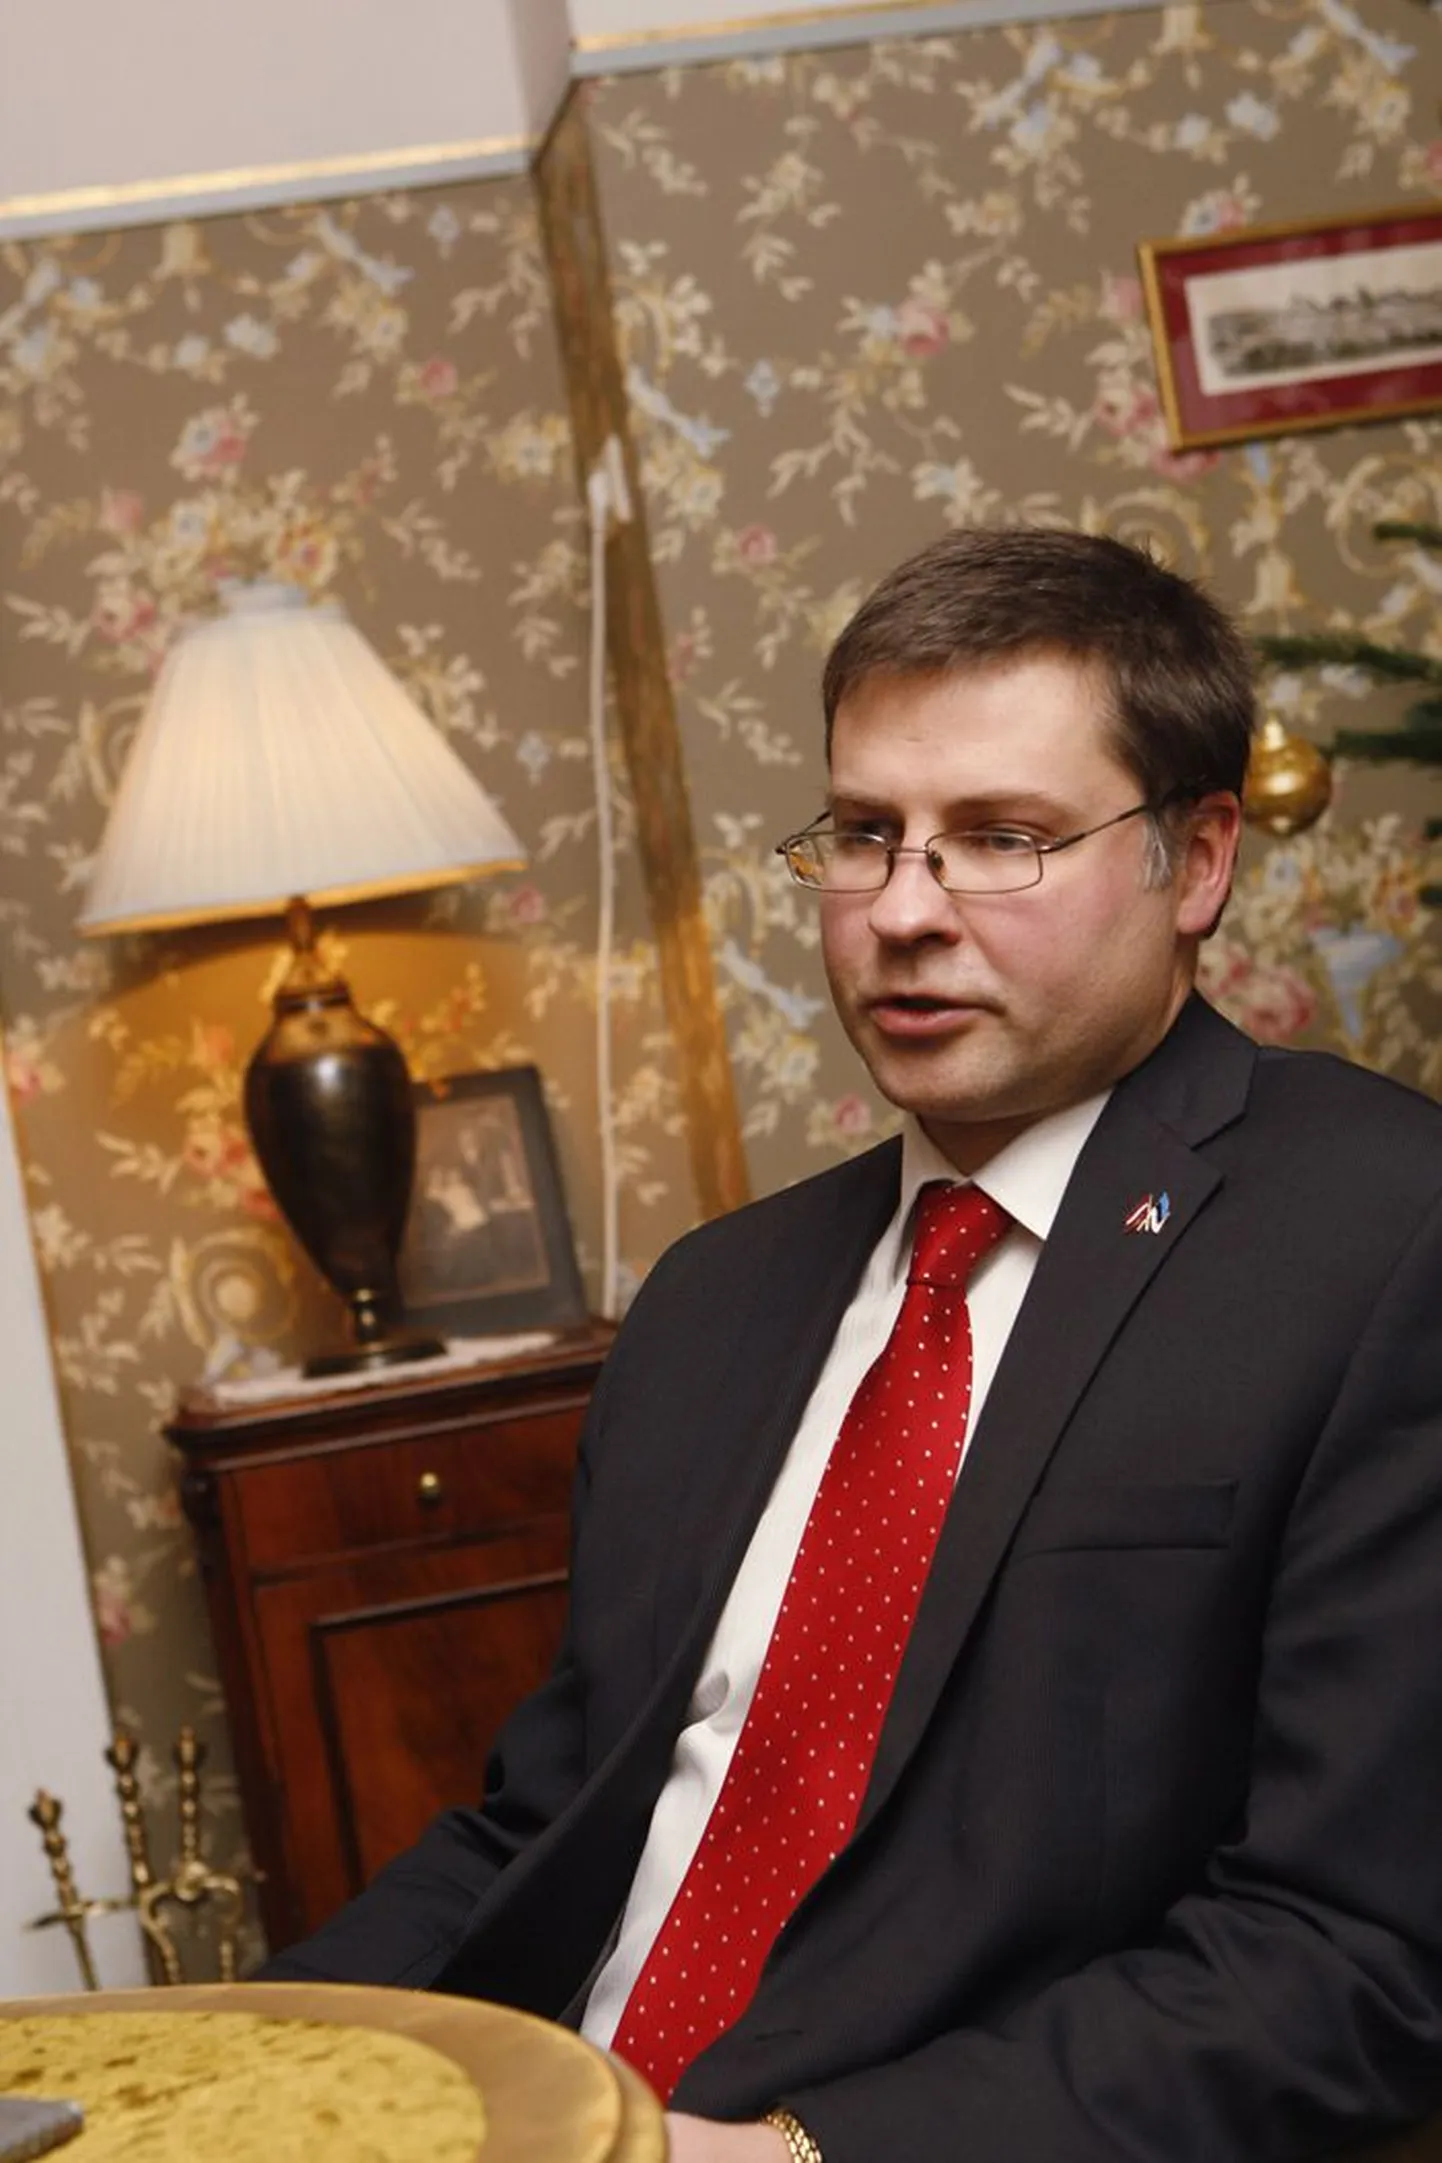 Läti peaminister Valdis Dombrovskis on öelnud, et vene keelele teise riigikeele staatuse andmise referendumi algatamine oli möödunud aasta suurim poliitiline viga nende riigis.